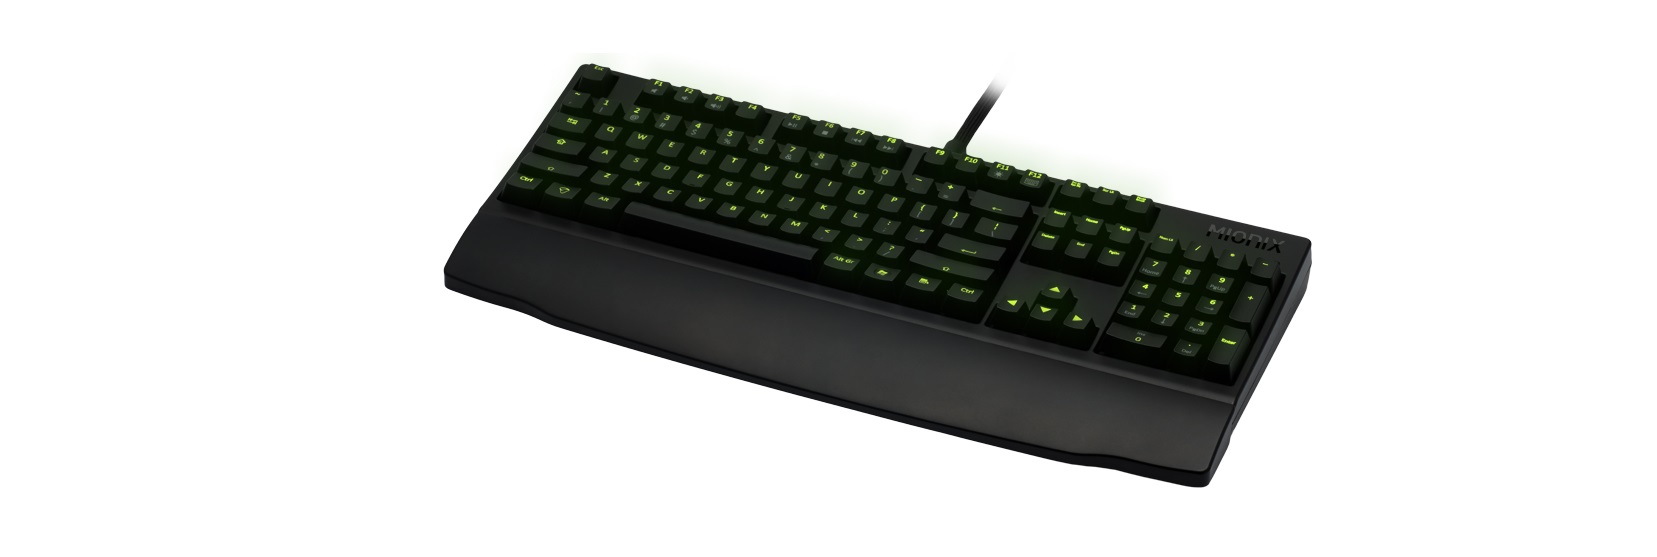 Keyboard Mionix Zibal Mechanical Cherry MX Black có thiết kế tiêu chuẩn của 1 chiếc bàn phím cơ